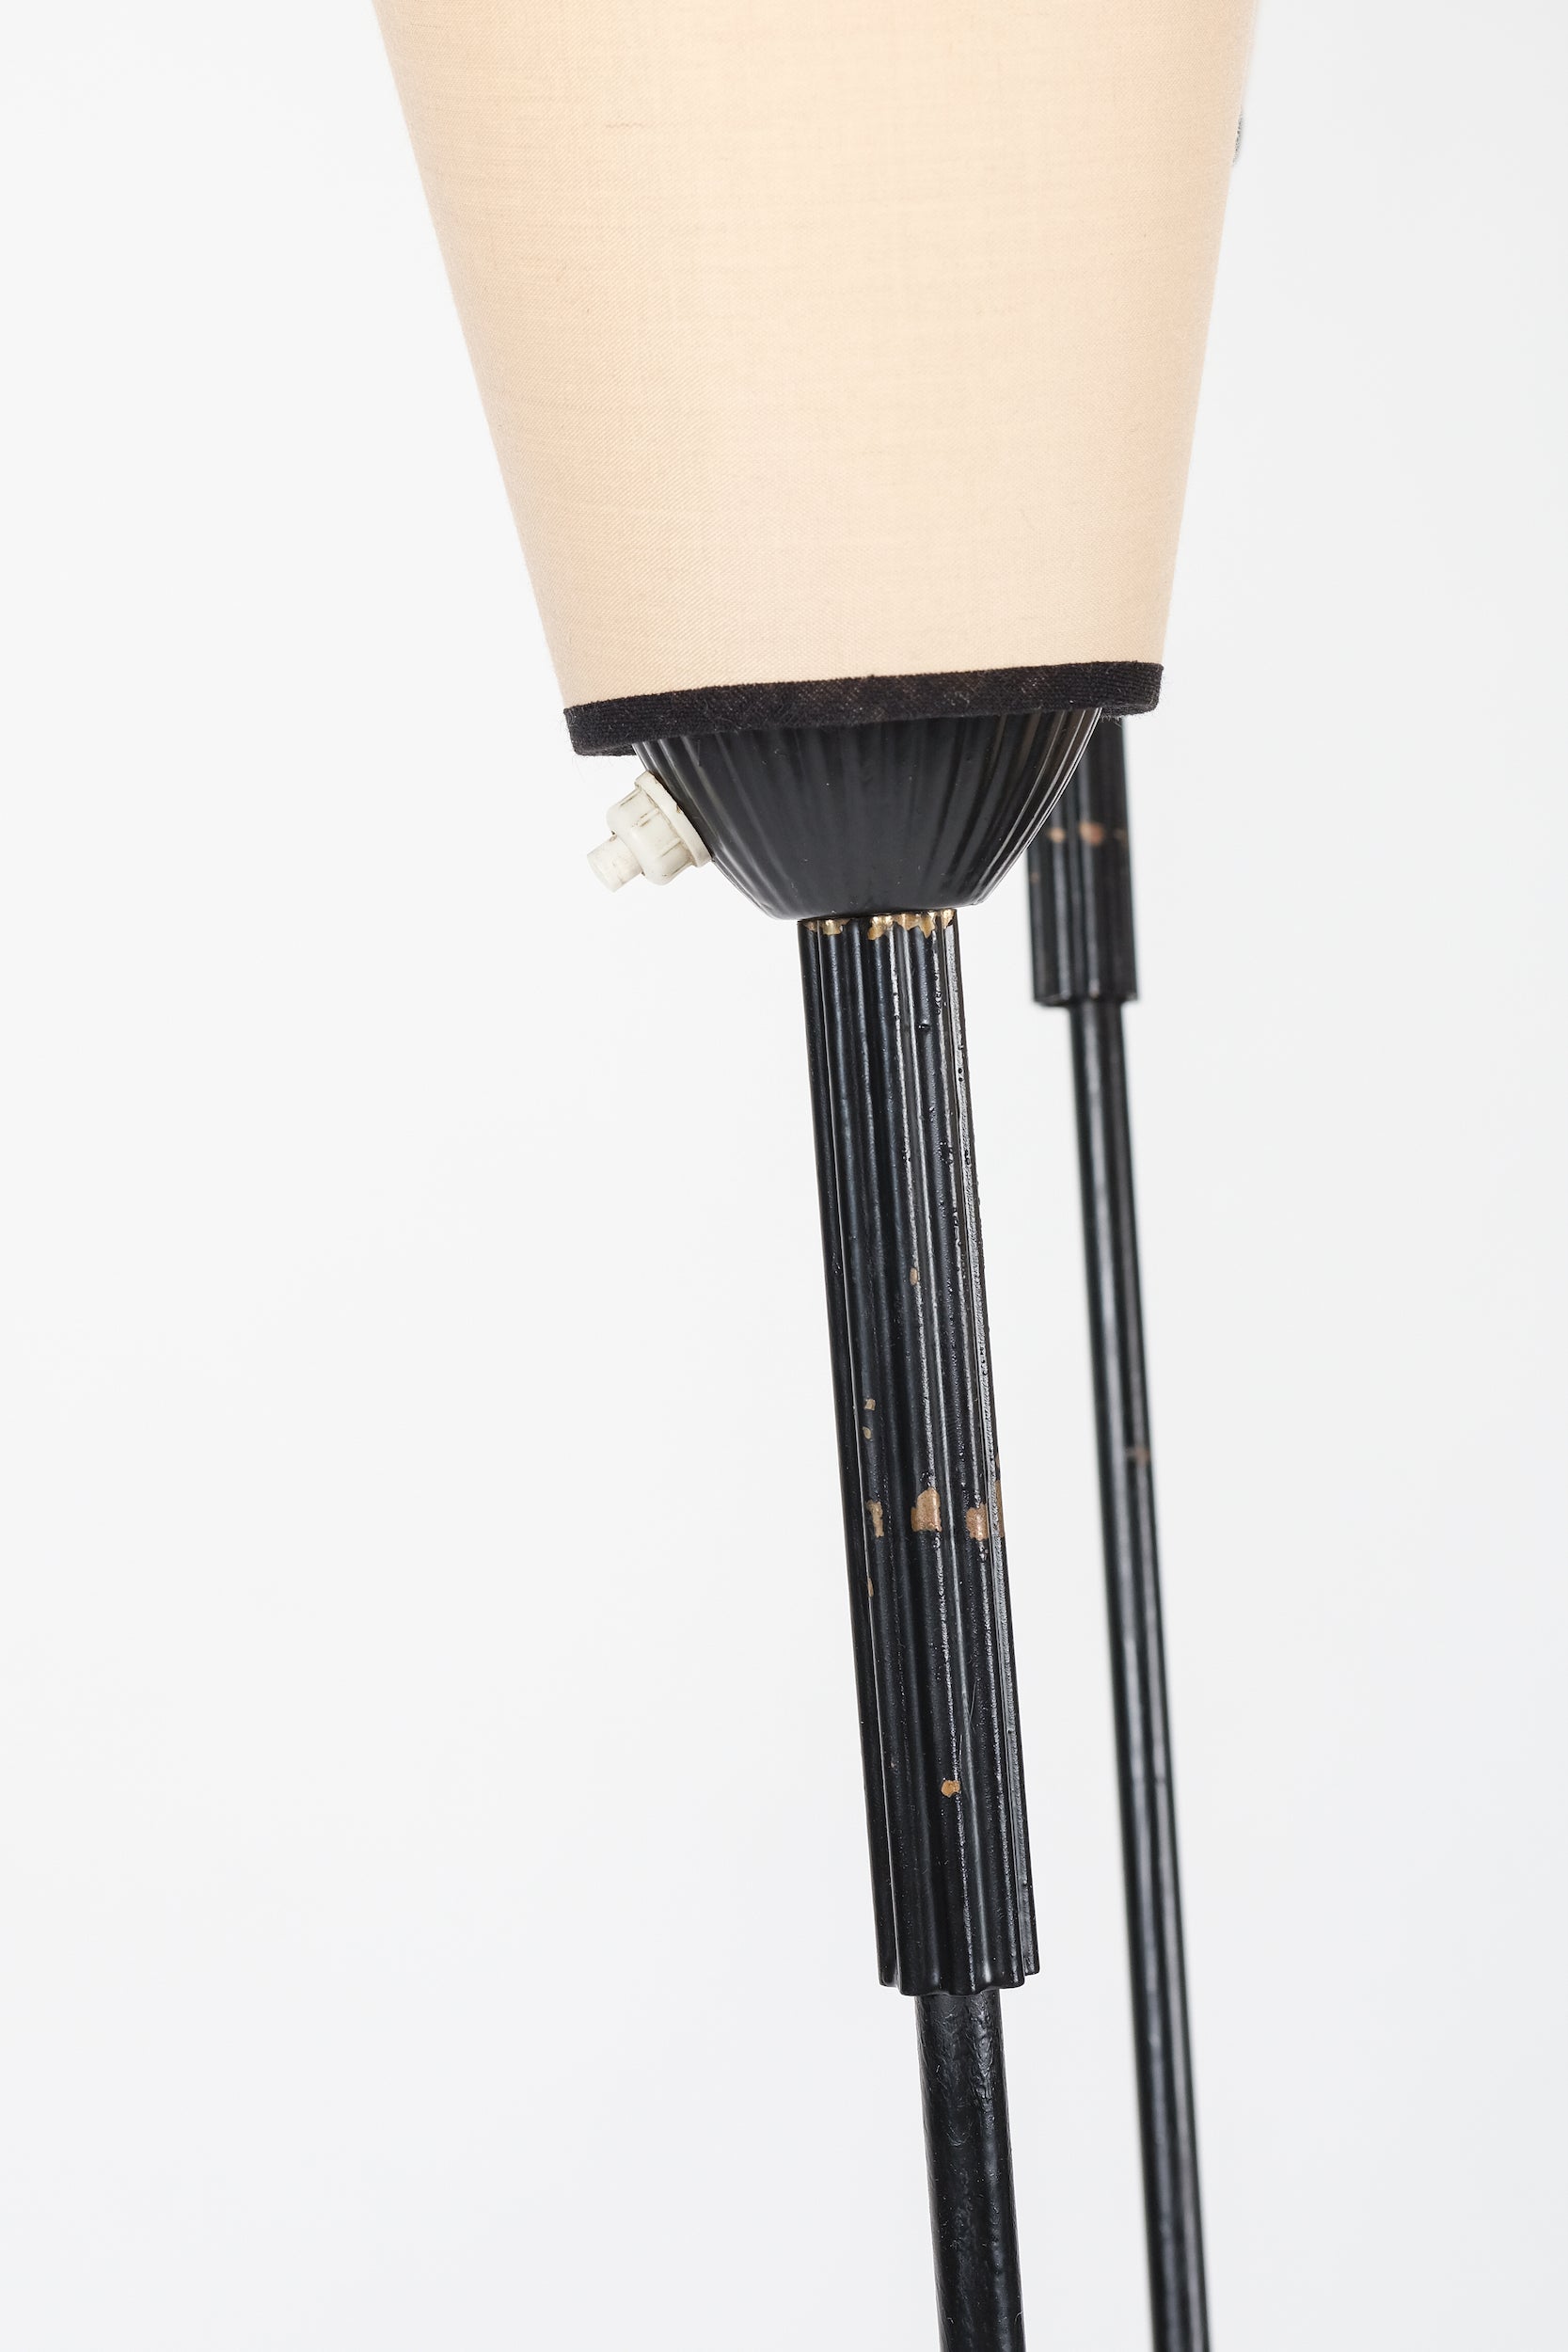 Floor Lamp, France, 50s